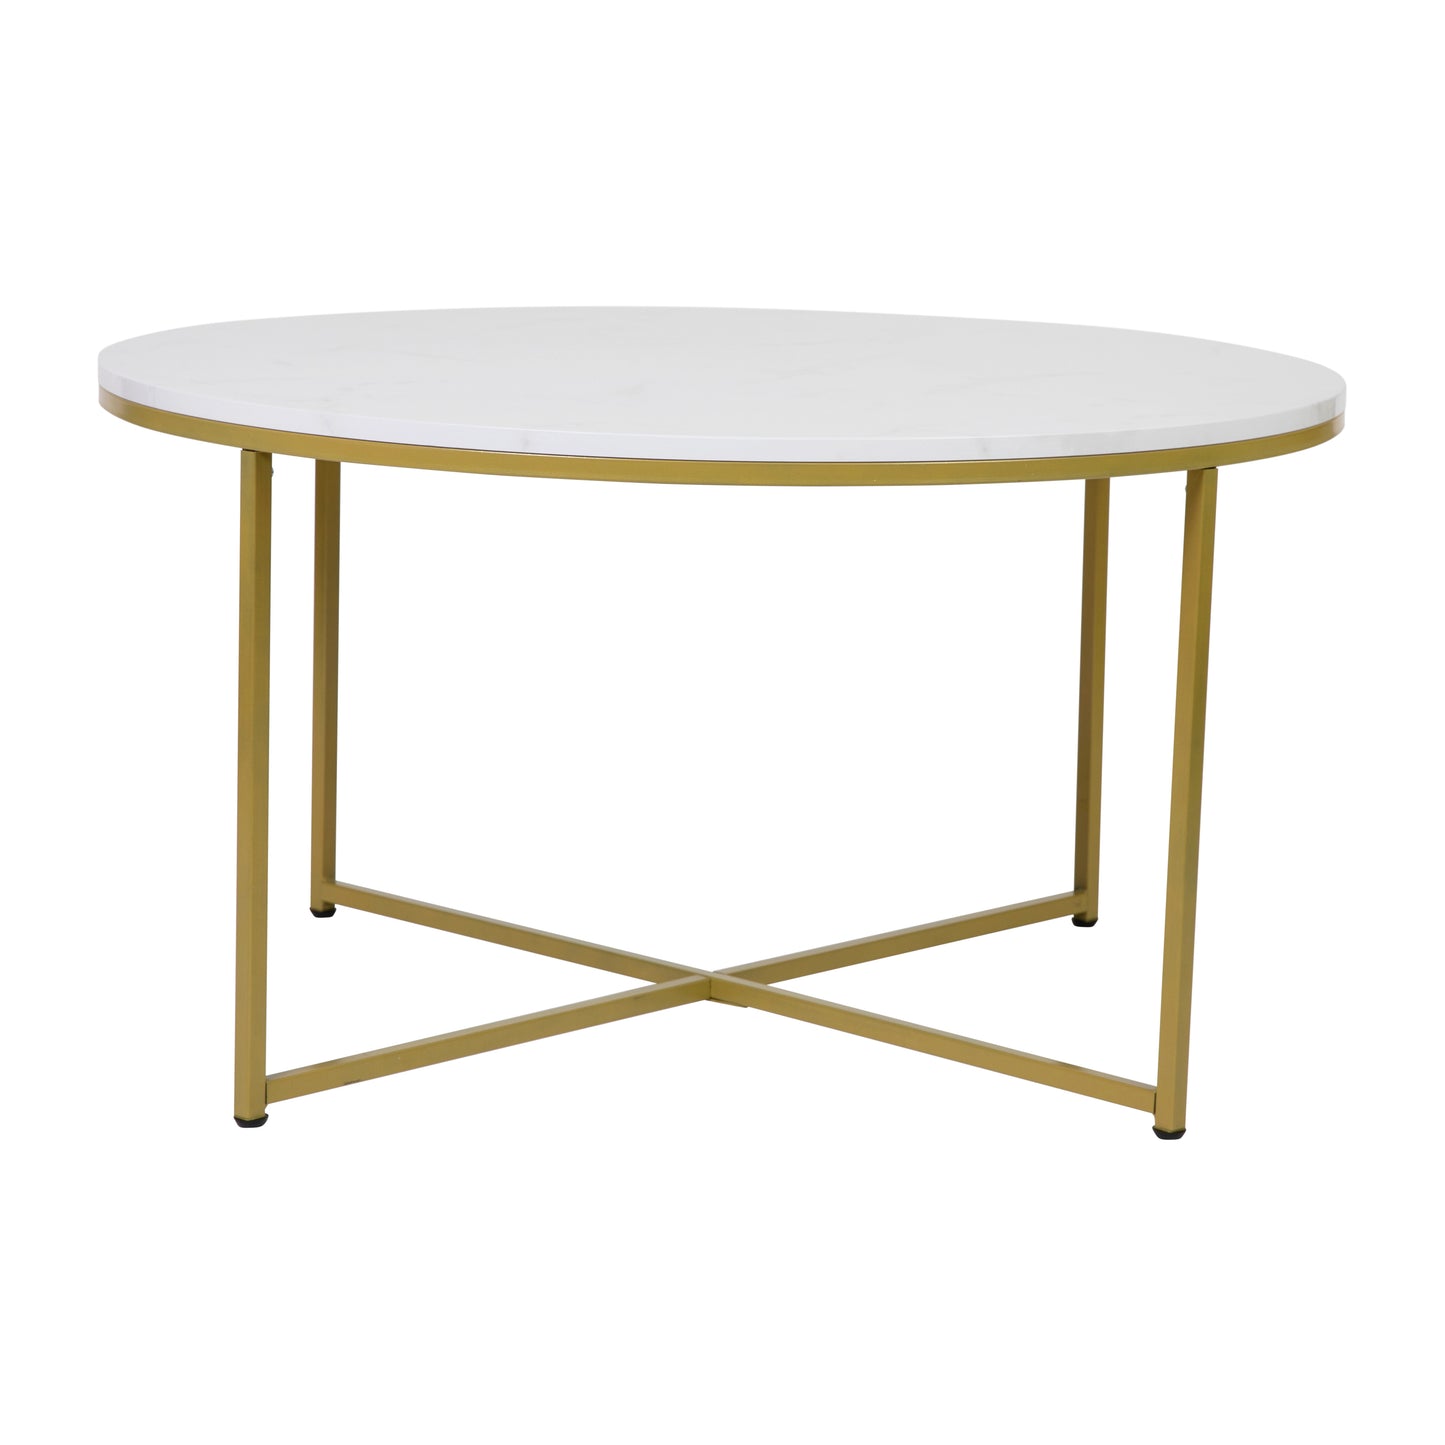 3PC White Marbled Table Set NAN-CEK-1787-MRBL-GG